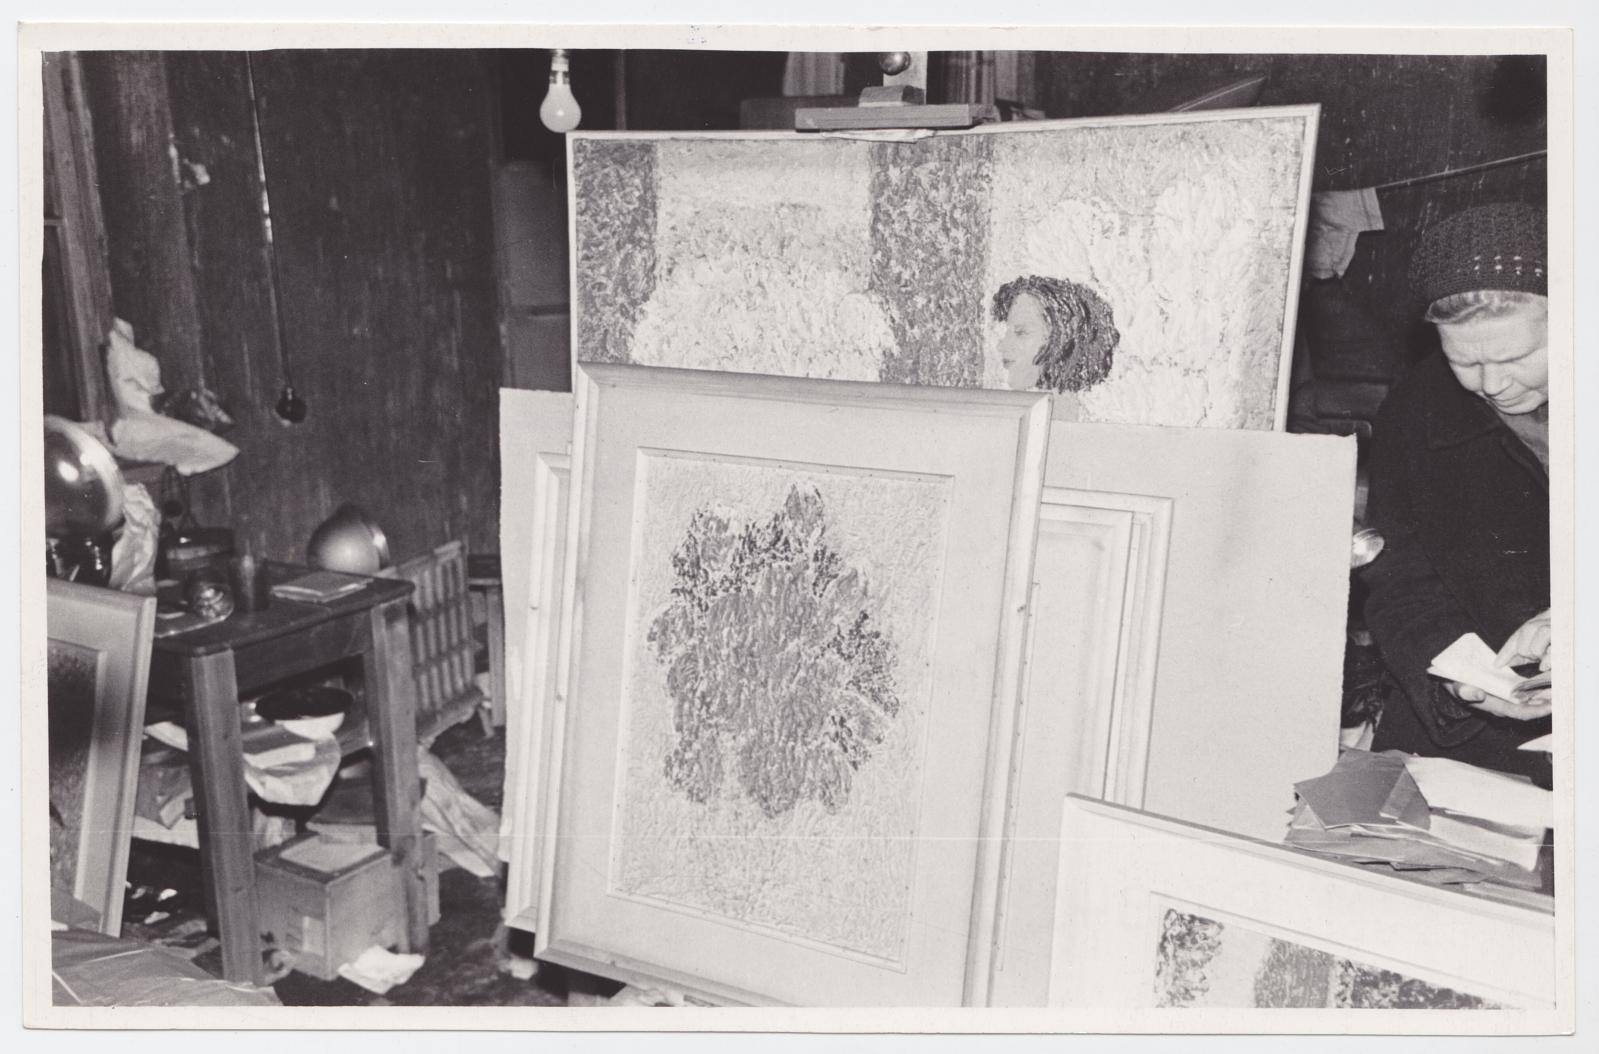 Ellinor Aiki ateljee pärast tulekahju 25.10.1969. Pildistas T. Ilomets kell 23.30. Muuseumi peavarahoidja Tuui Koort ateljees